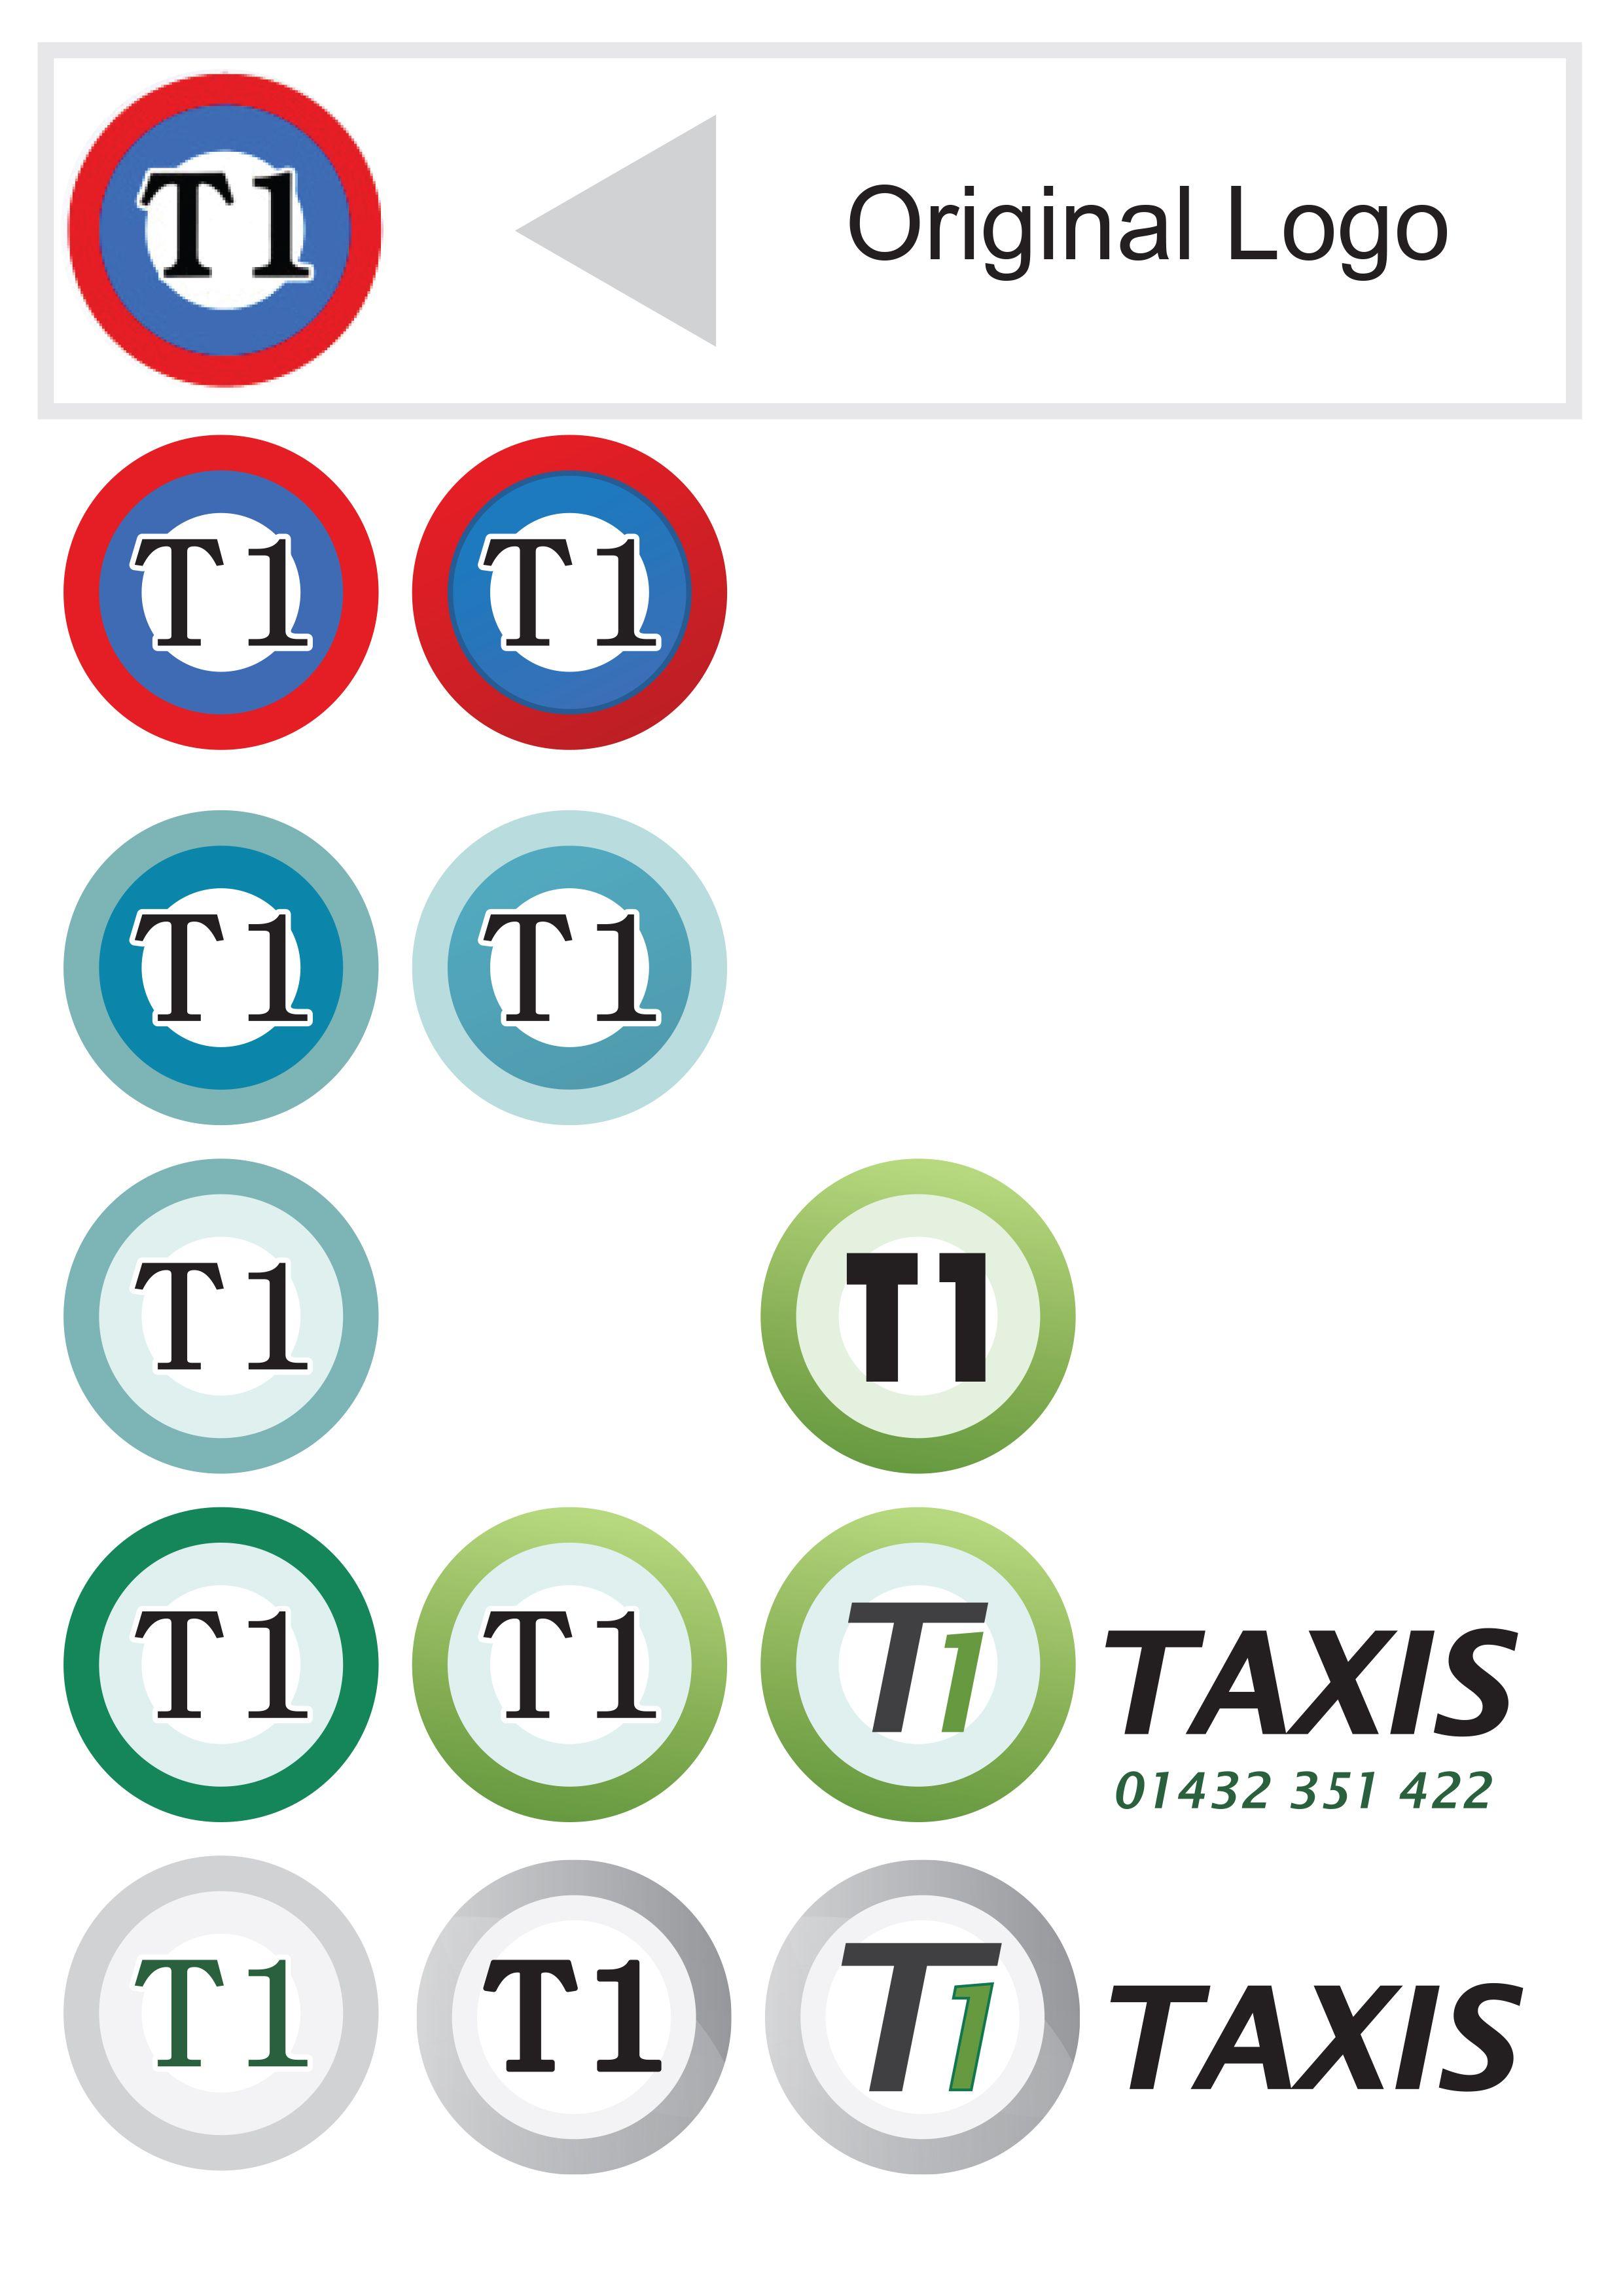 T1 Logo - T1 Taxi logo concepts | Kevin Mace